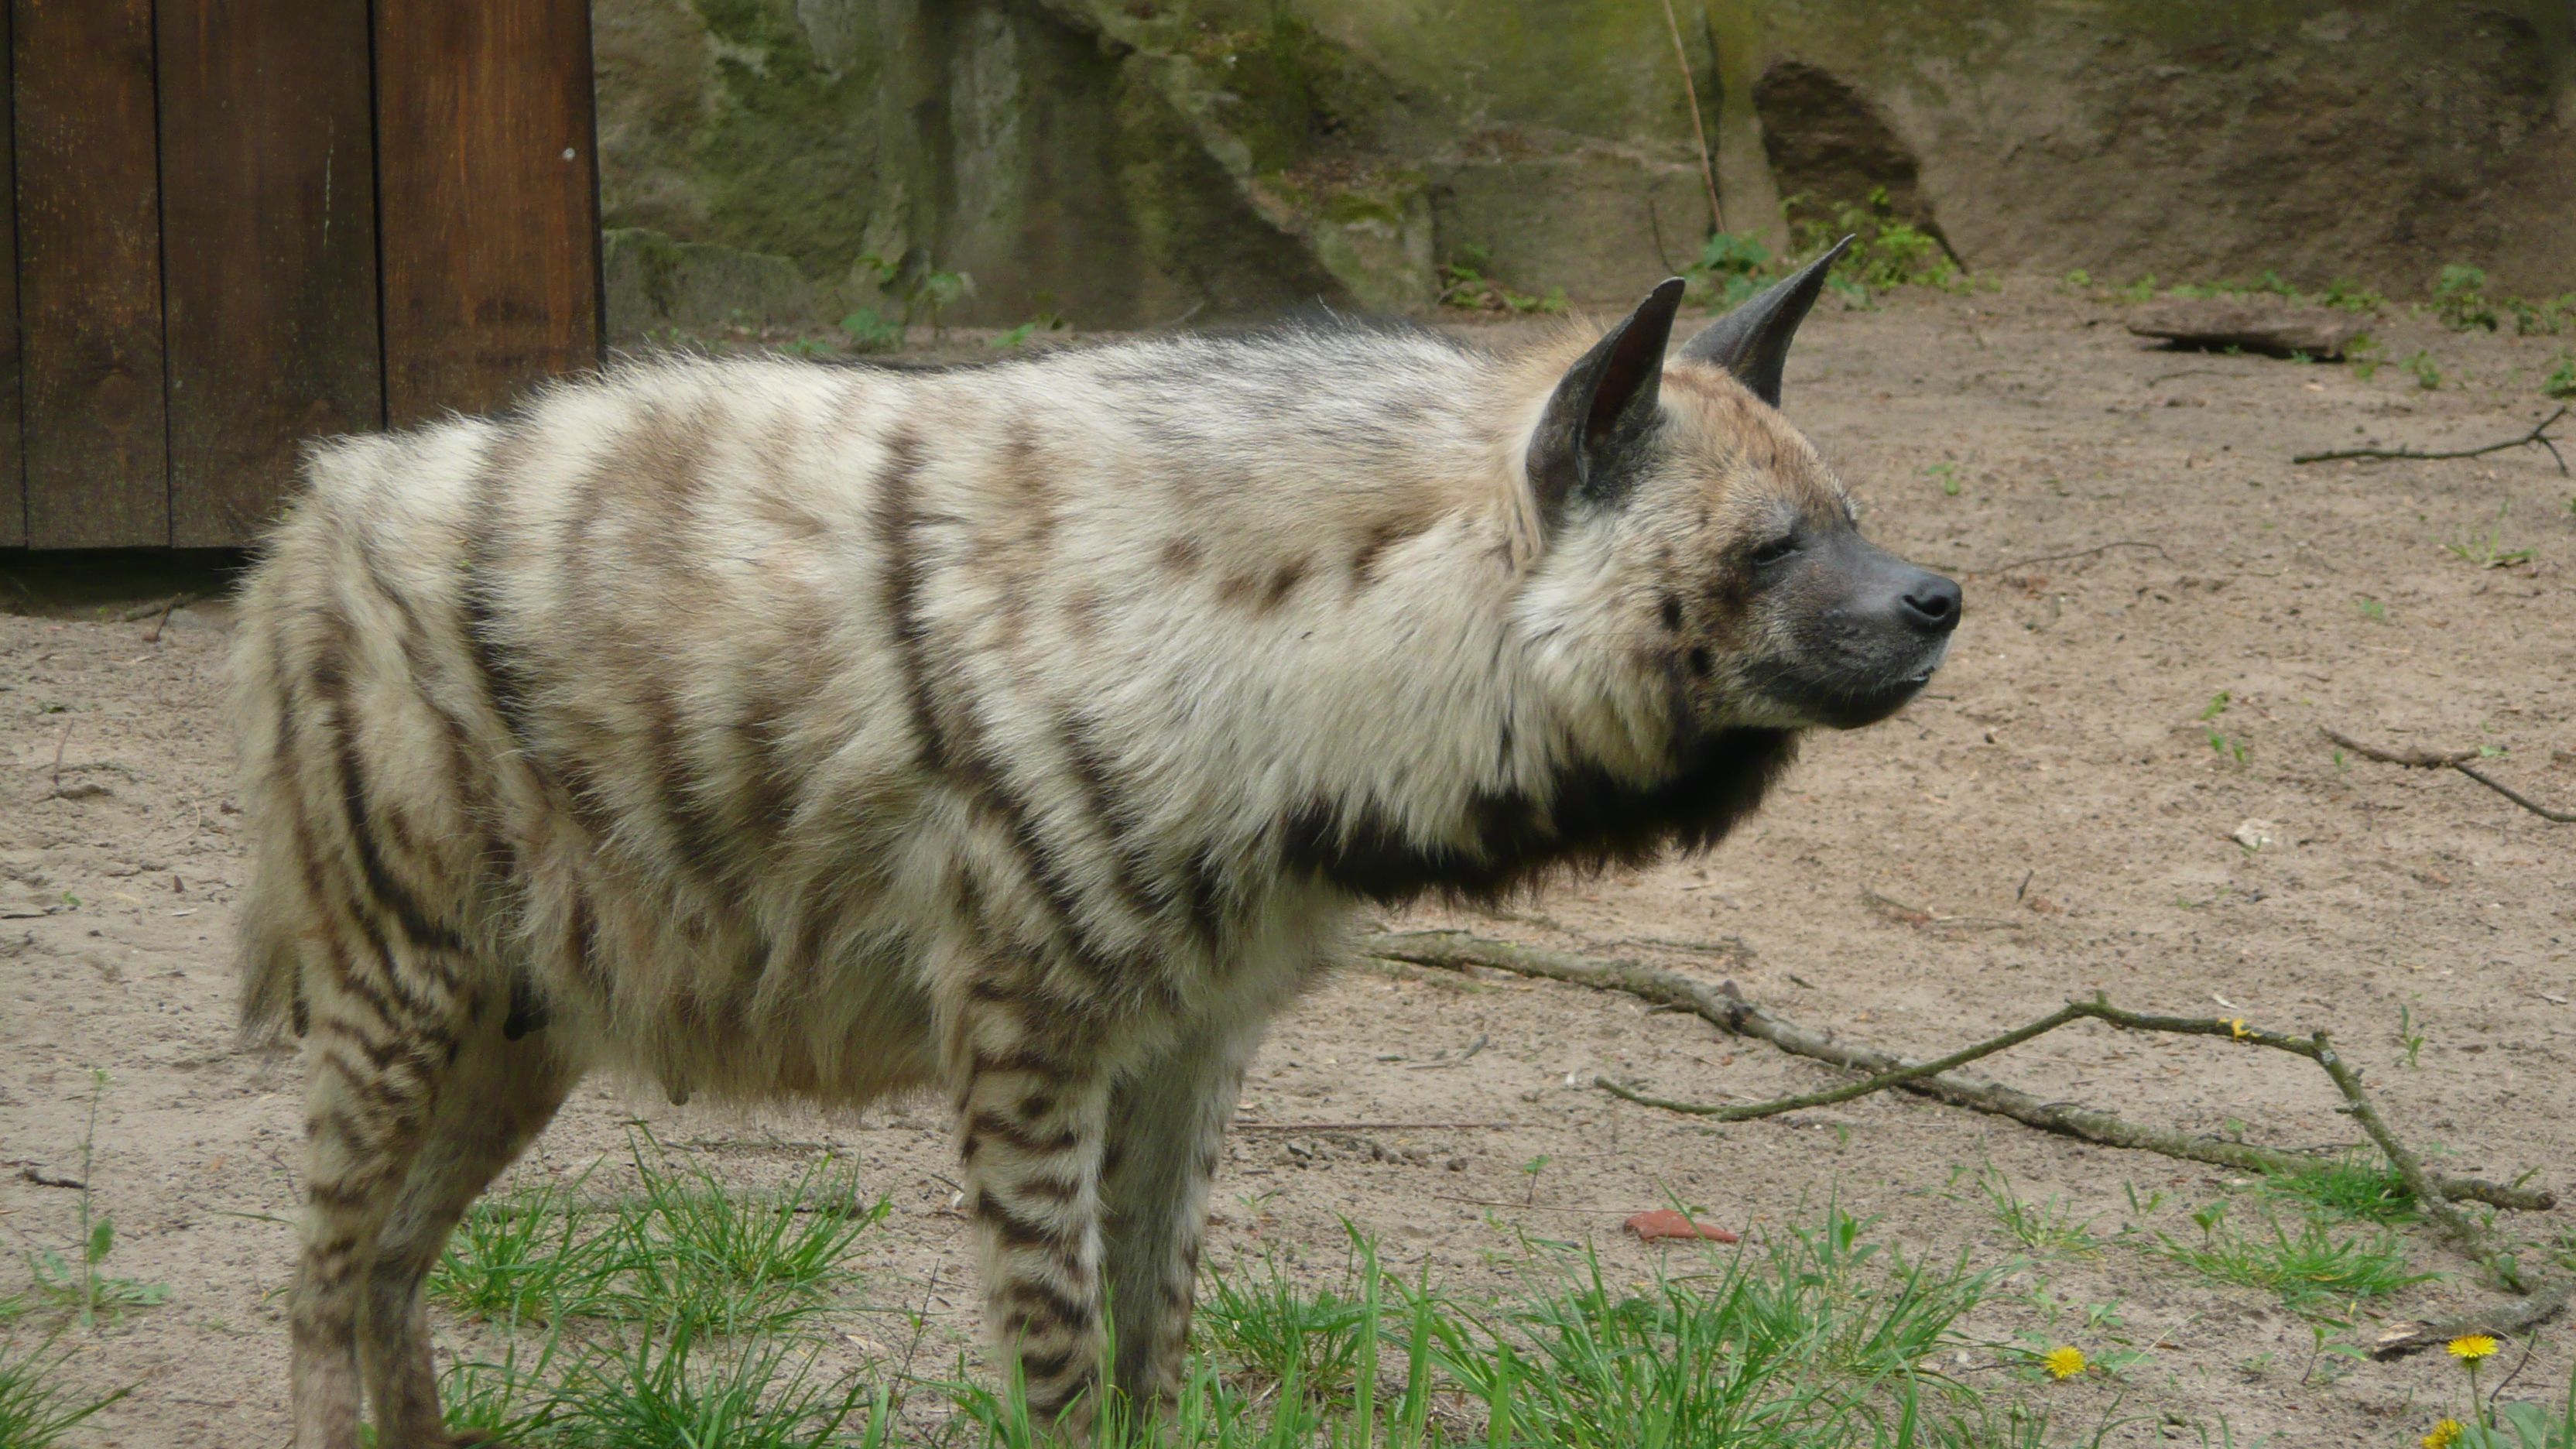 Striped hyena